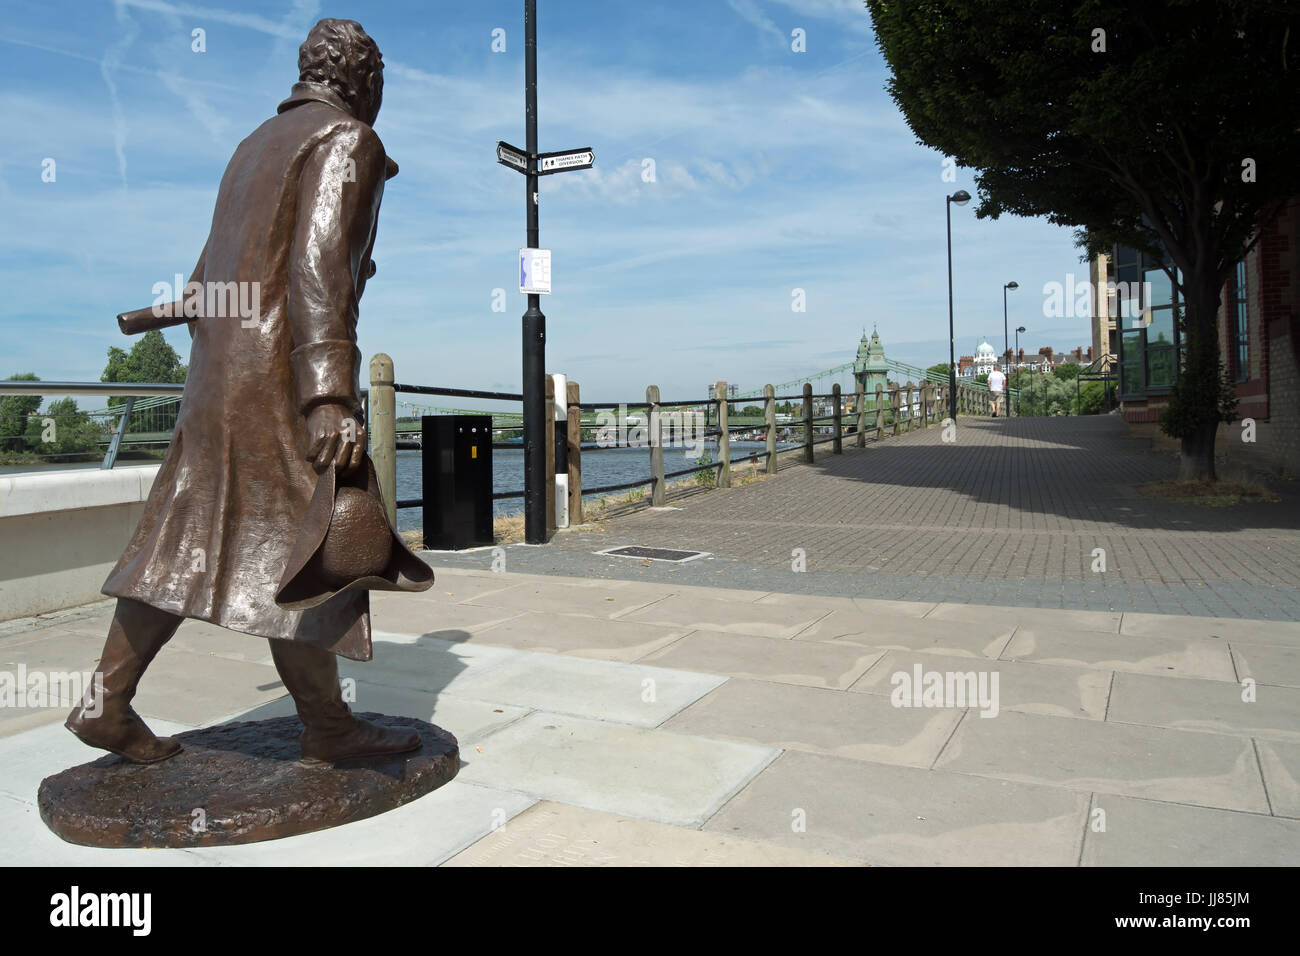 Statue de Lawrence capability brown, par le sculpteur laury dizengremel, à côté de la Tamise à quai distillerie, Fulham, Londres, Angleterre Banque D'Images